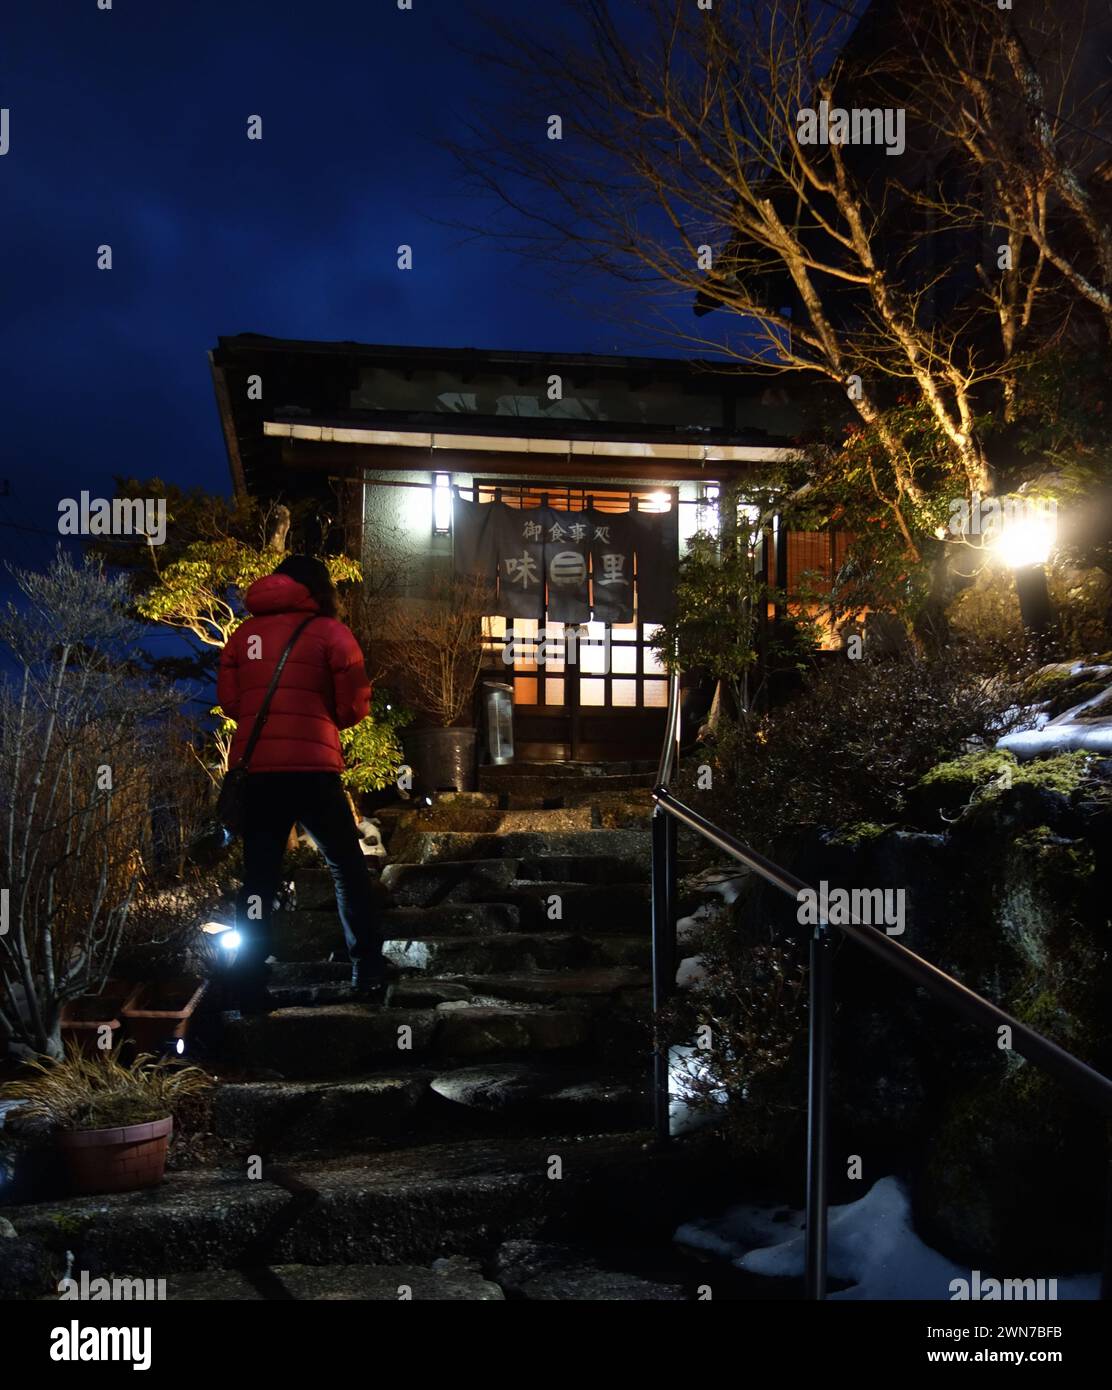 Persona in giacca rossa che entra nel tradizionale ristorante Izakaya, nel lago Yamanaka, nella regione del monte Fuji, in Giappone Foto Stock